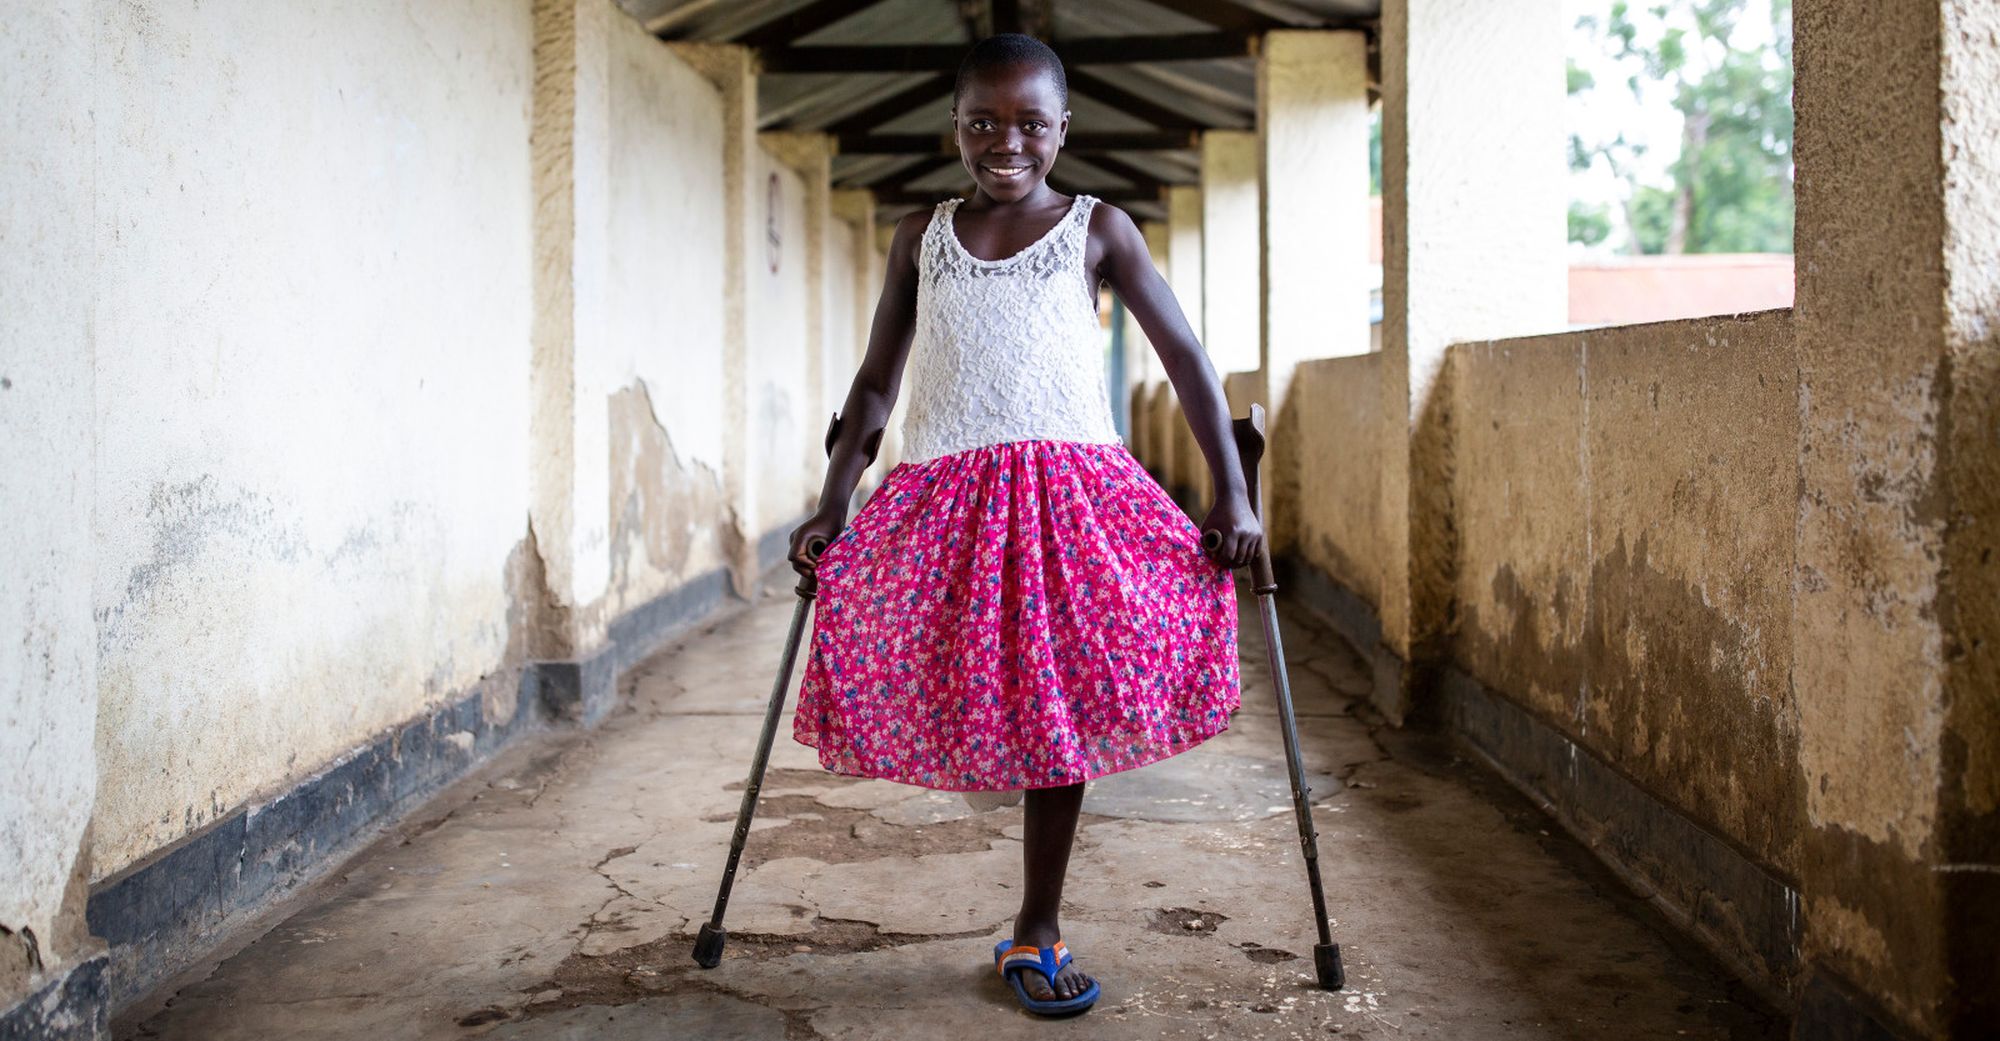 Mädchen aus der Demokratischen Republik Kongo mit pinkem Rock auf Krücken. Ihr fehlt ein Bein.